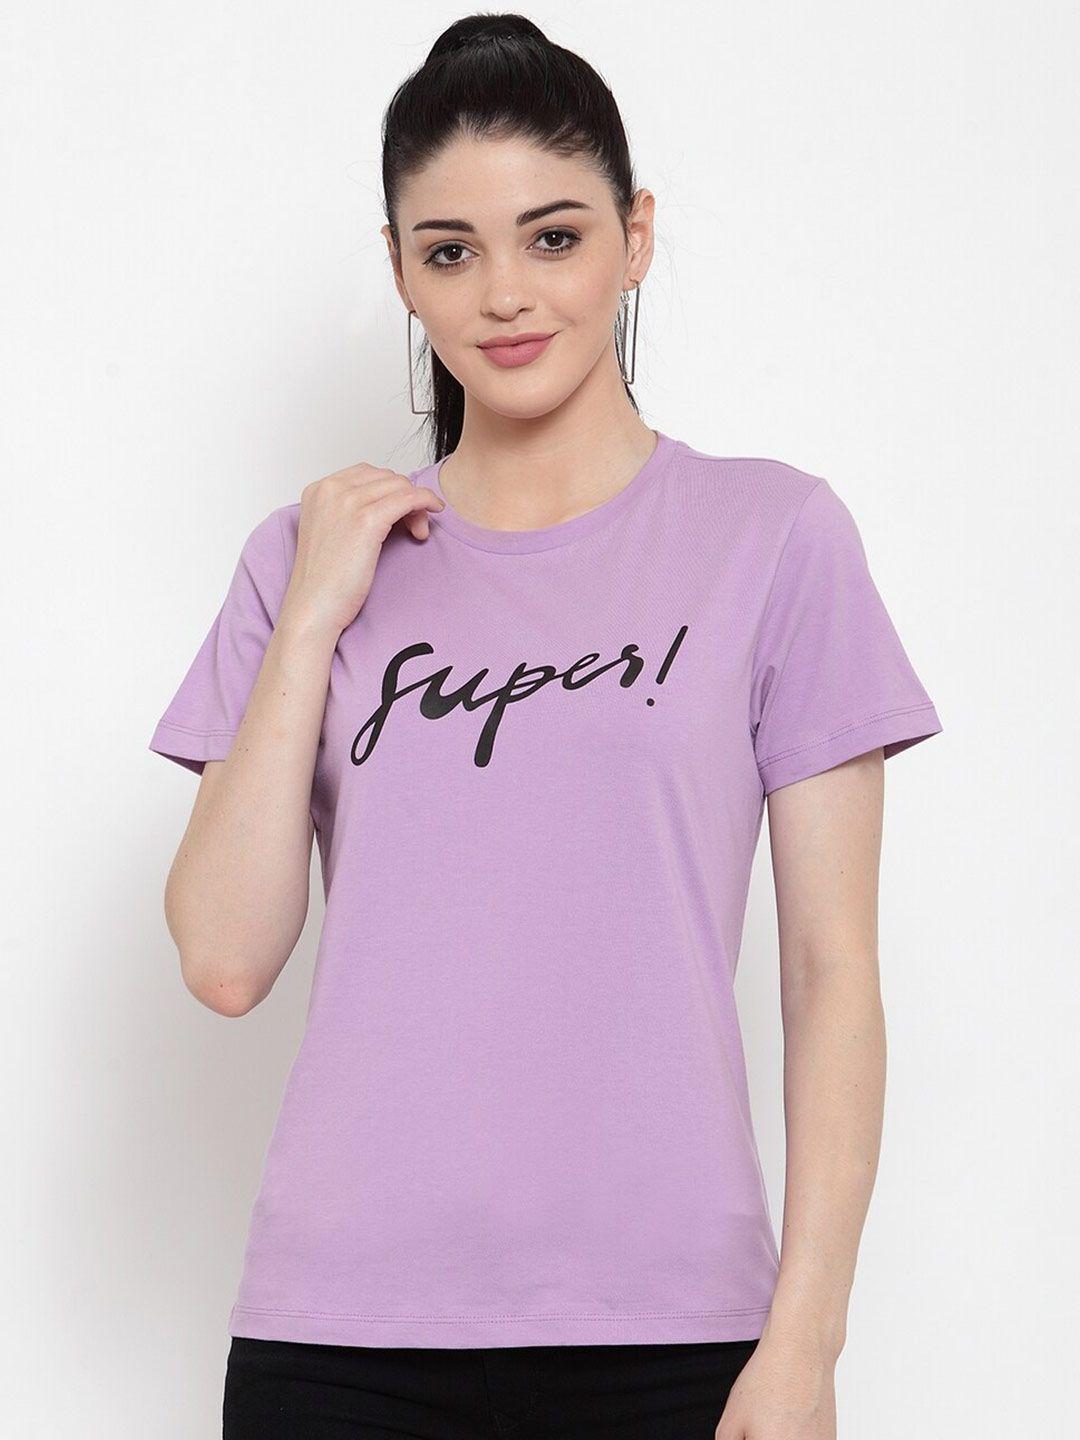 door74 women purple printed t-shirt